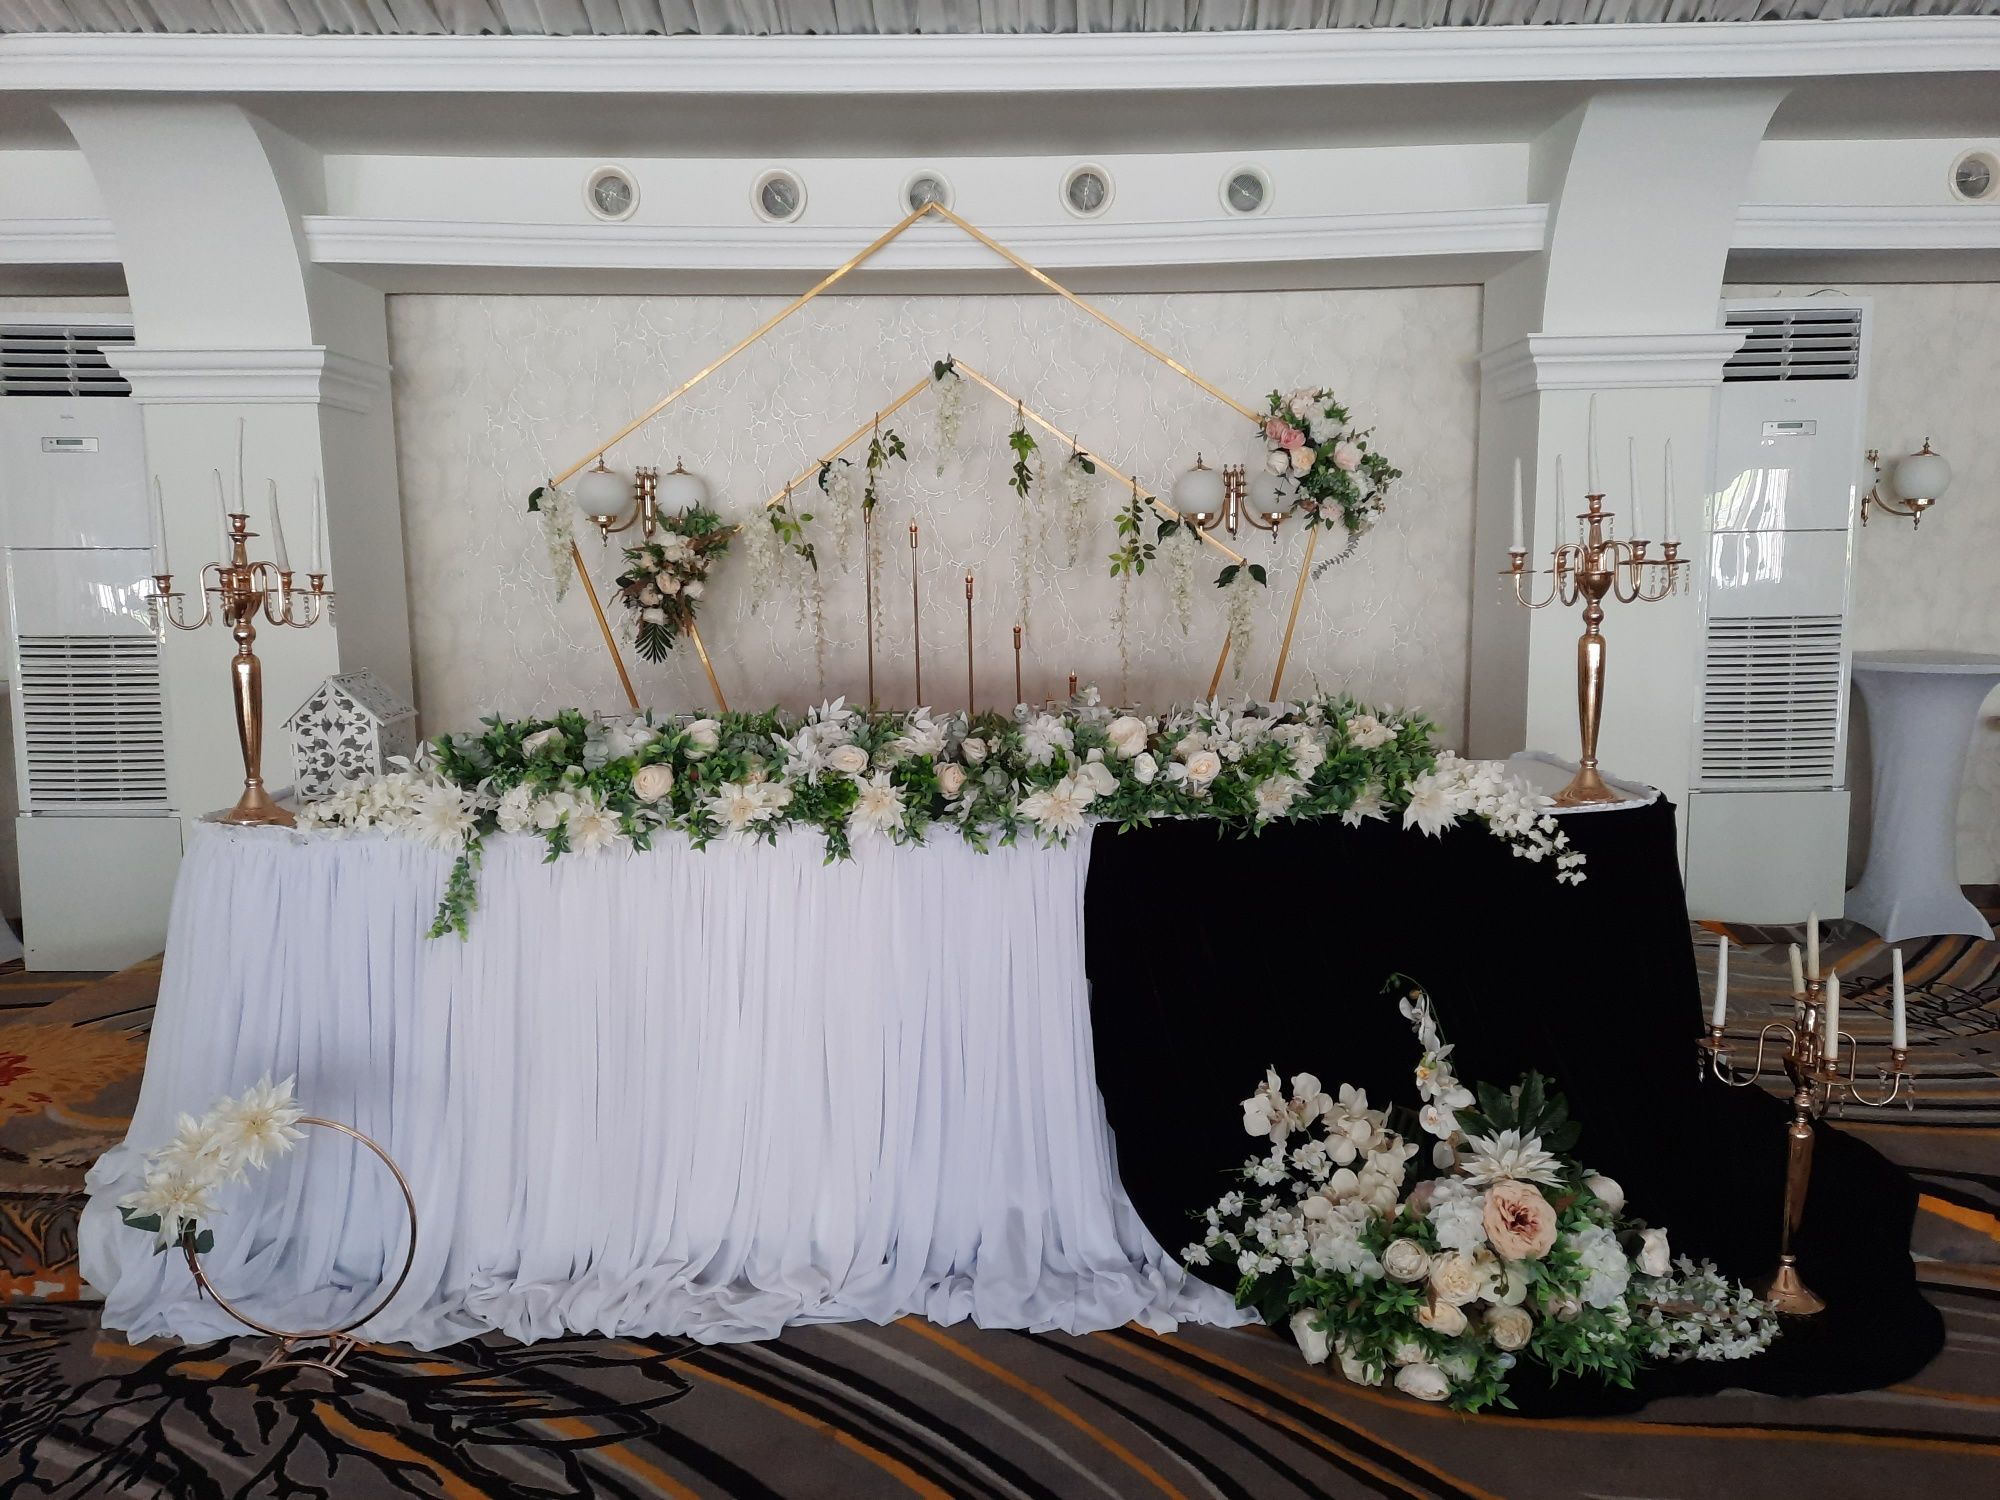 Decorațiuni evenimente nunta, aranjamente florale, baloane și altele